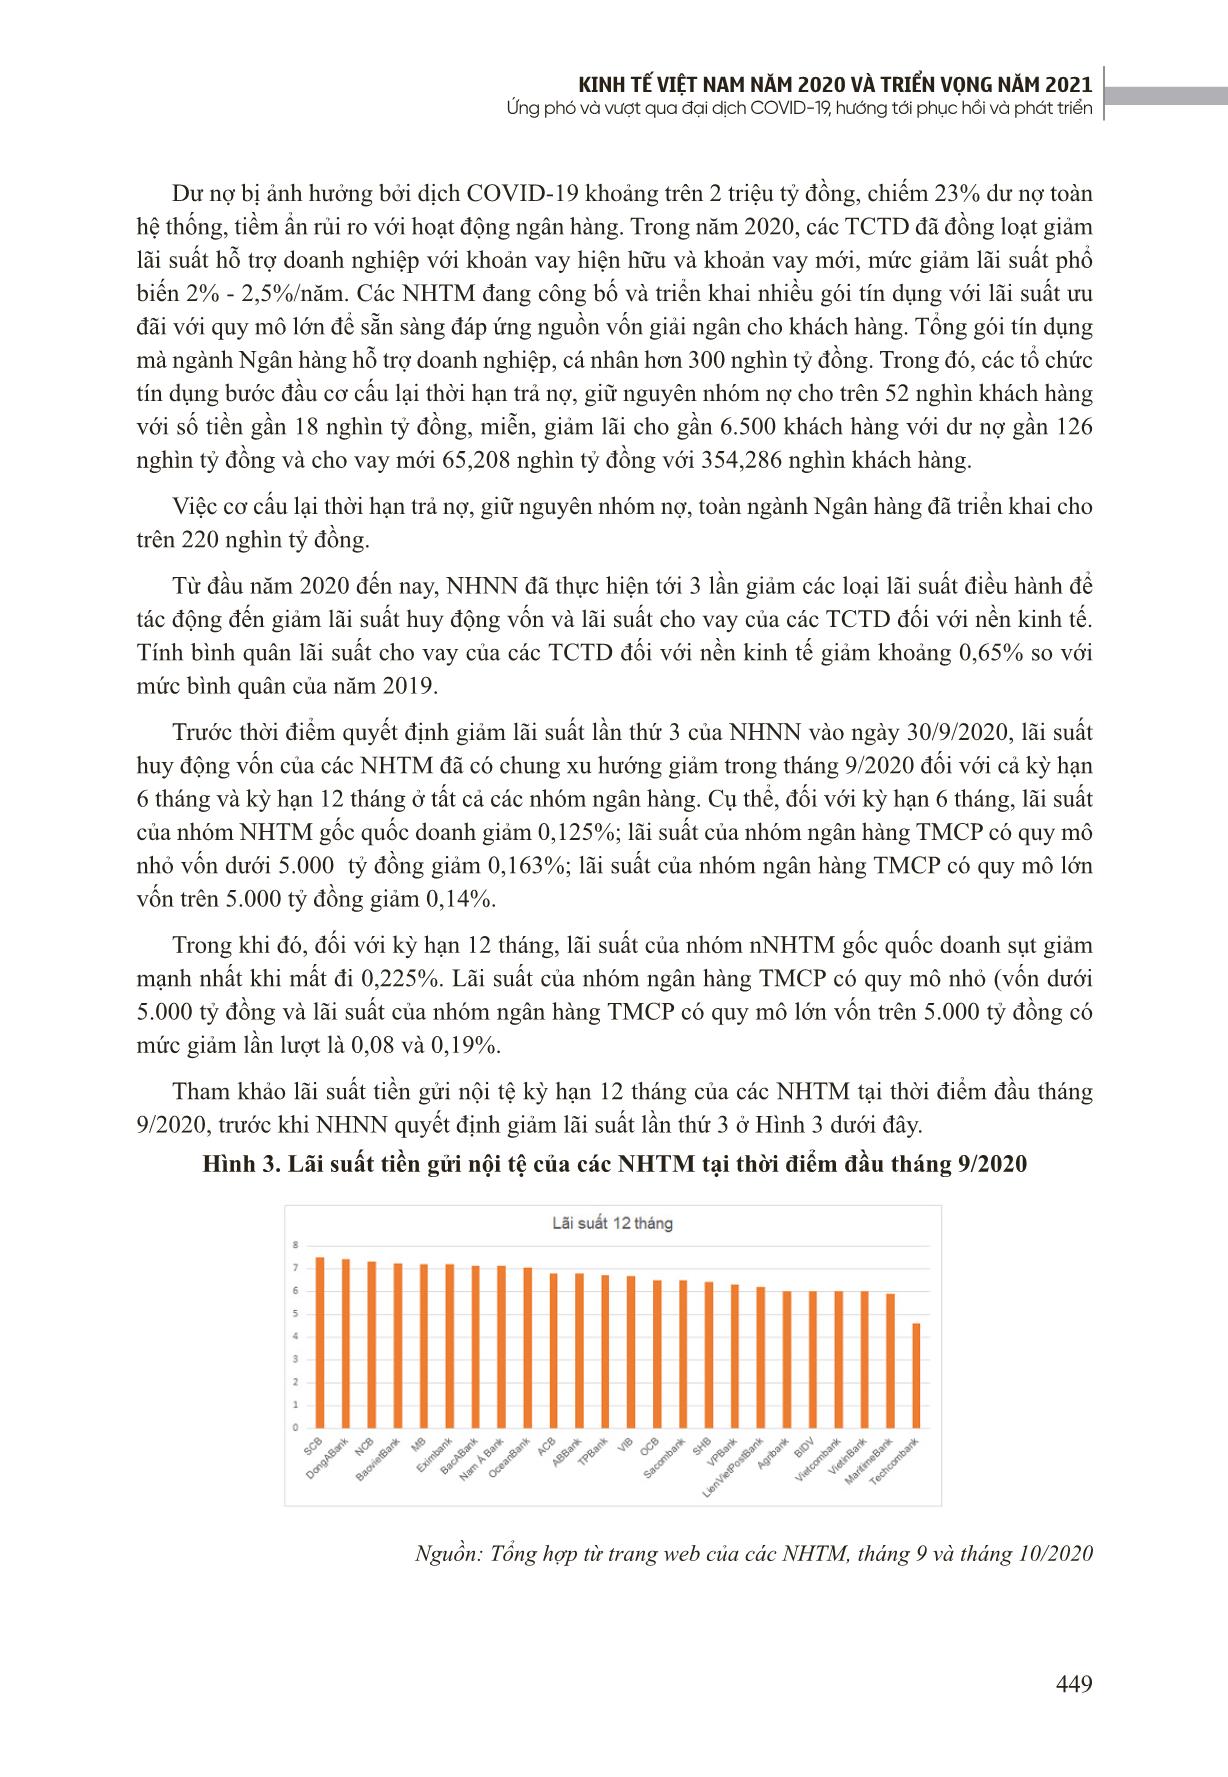 Tác động của đại dịch Covid-19 đến cho vay và nợ xấu của Ngân hàng Thương mại Việt Nam trang 4